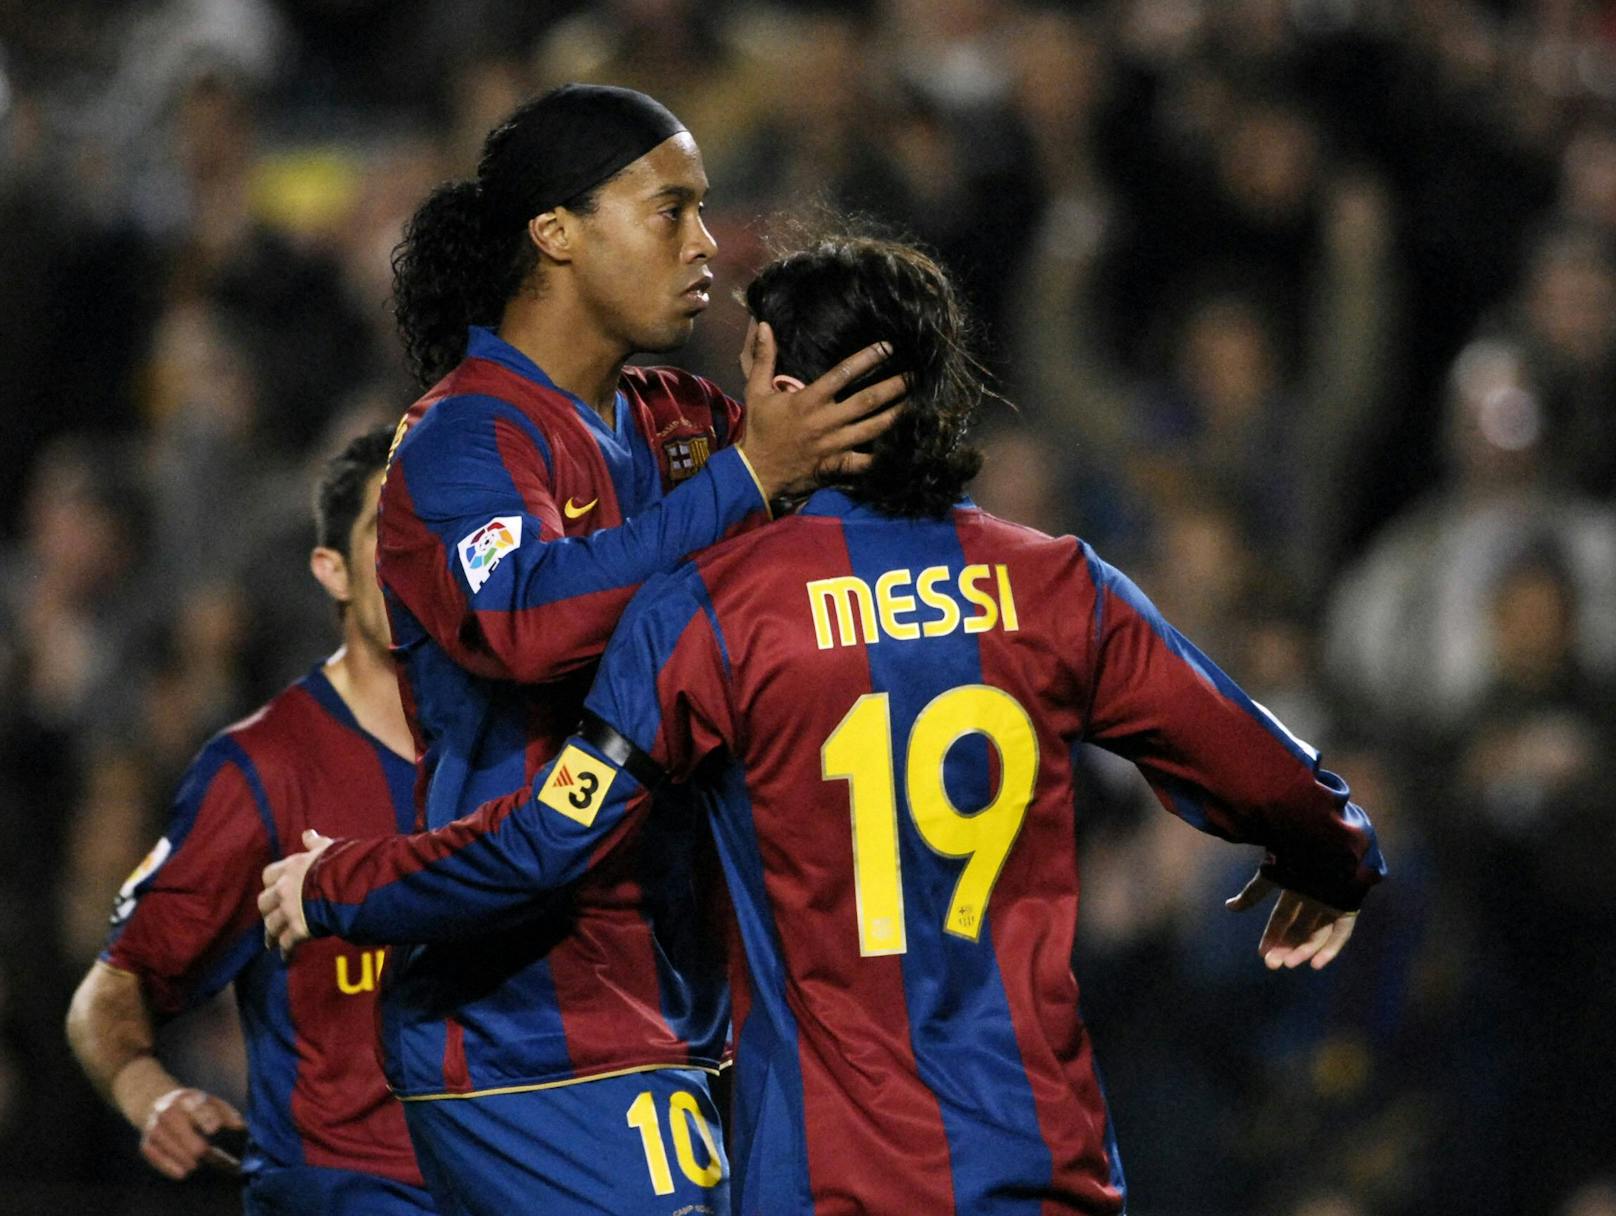 Neben Lehrmeister Ronaldinho wuchs "La Pulga" ("Der Floh") zum unumstrittenen Barcelona-Spielmacher heran, entwickelte mit Gerard Pique, Sergio Busquets, Andres Iniesta und Xavi das legendär gewordene Tiki Taka. 